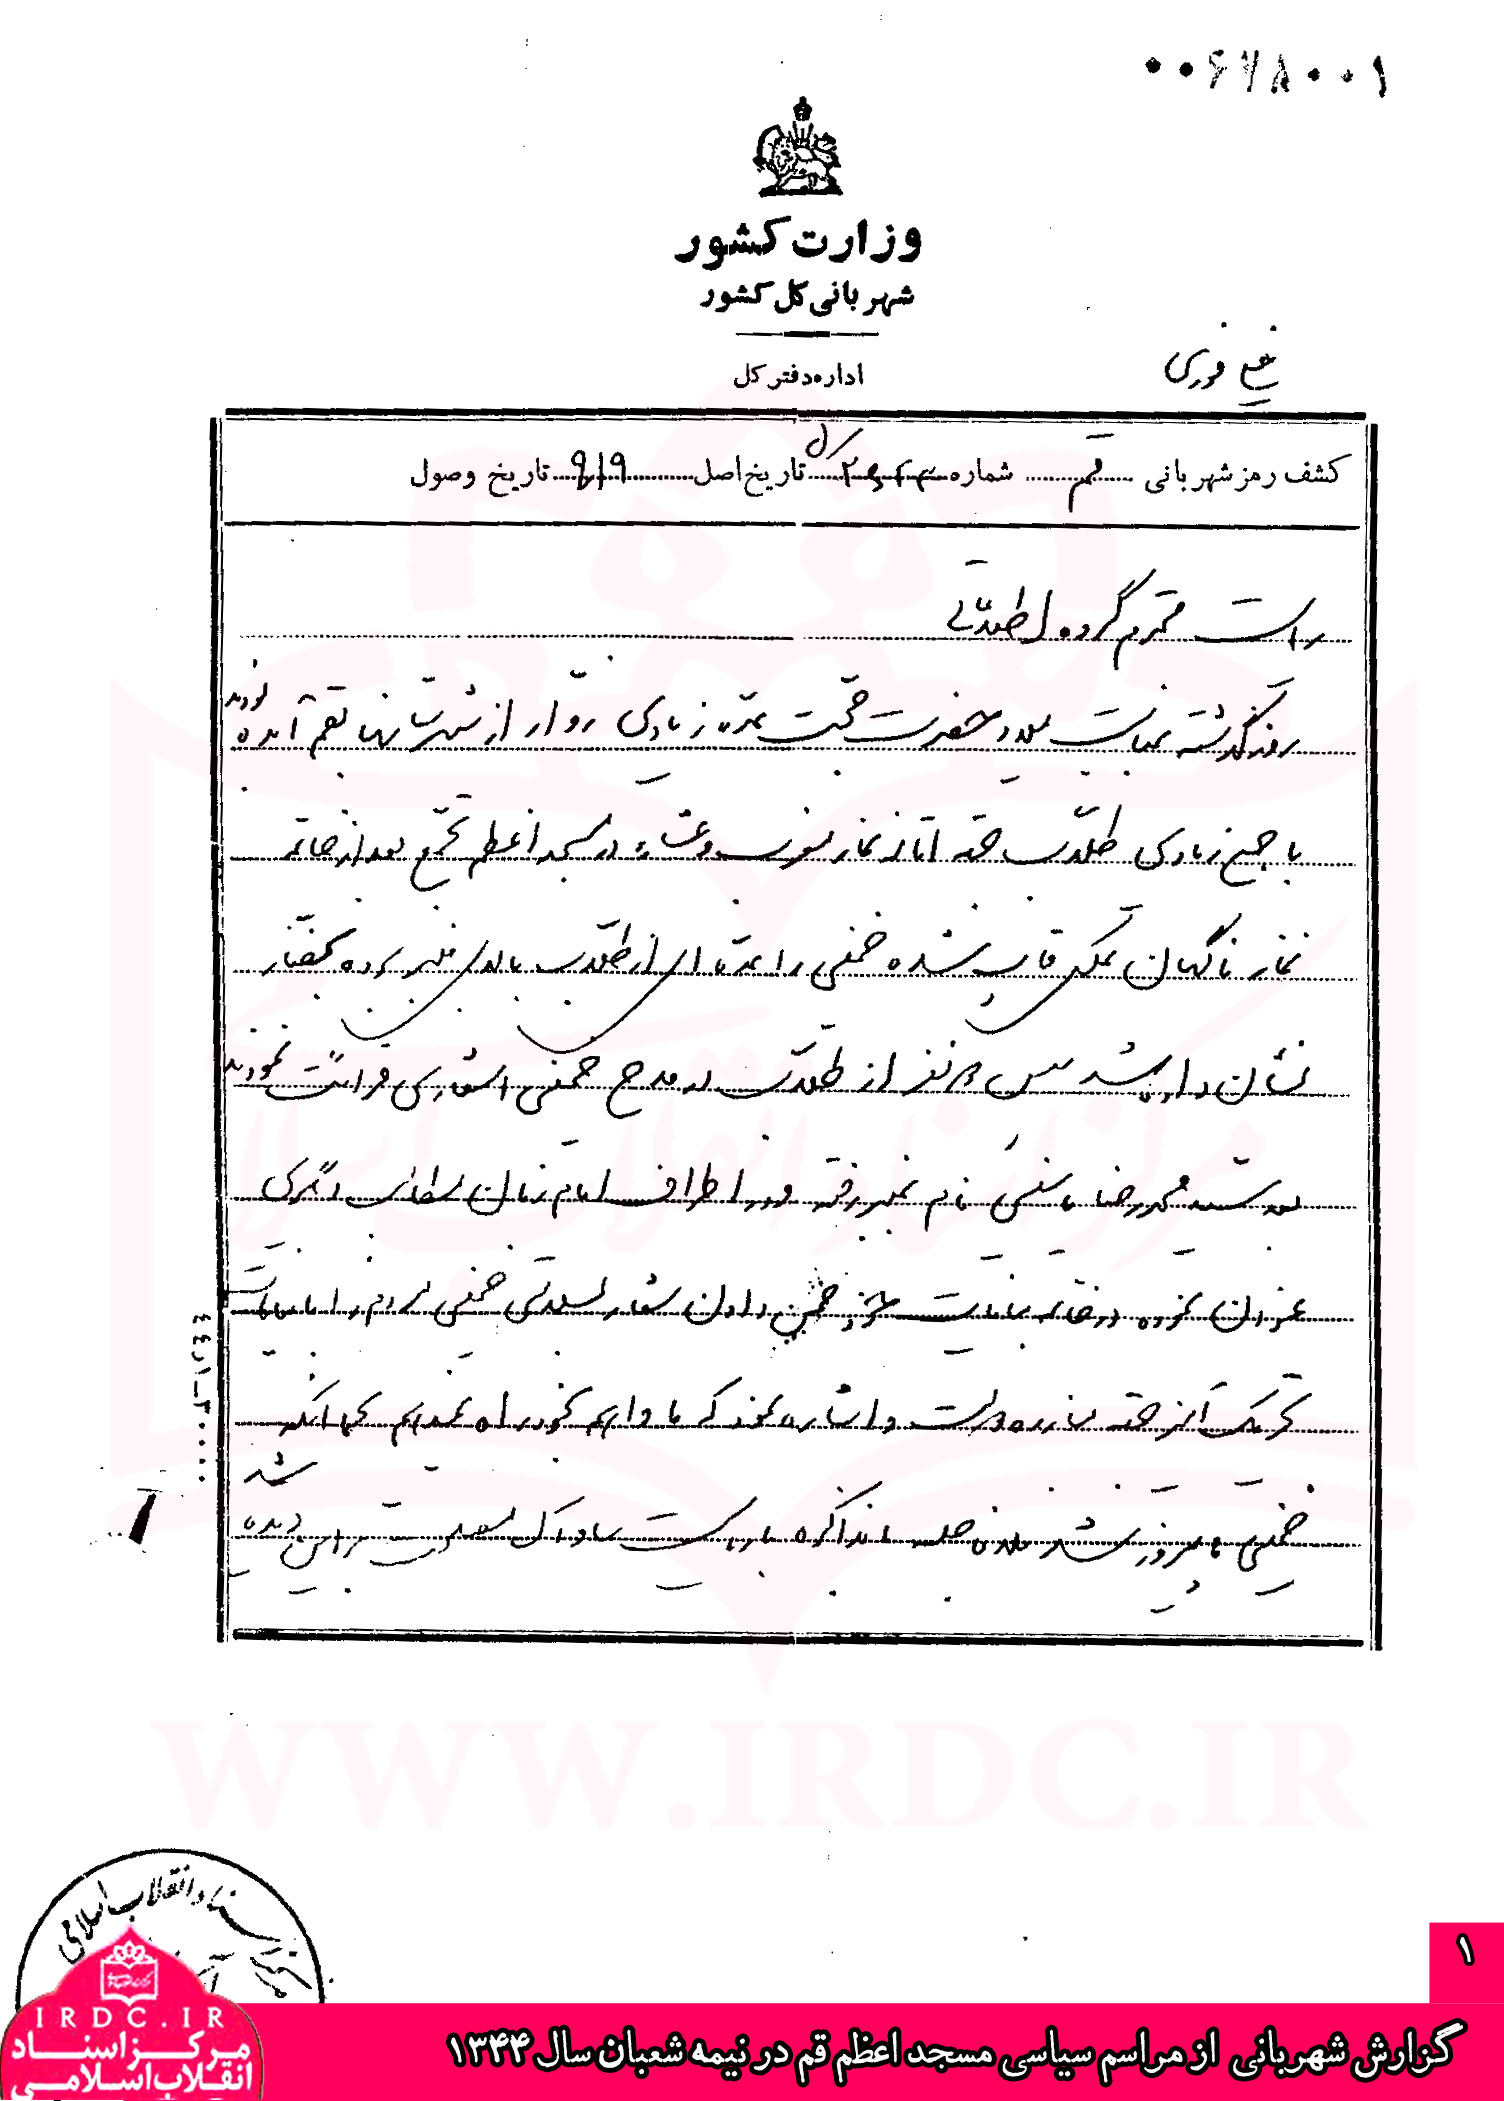 گزارش شهربانی از مراسم سیاسی مسجد اعظم قم در نیمه شعبان سال 1344